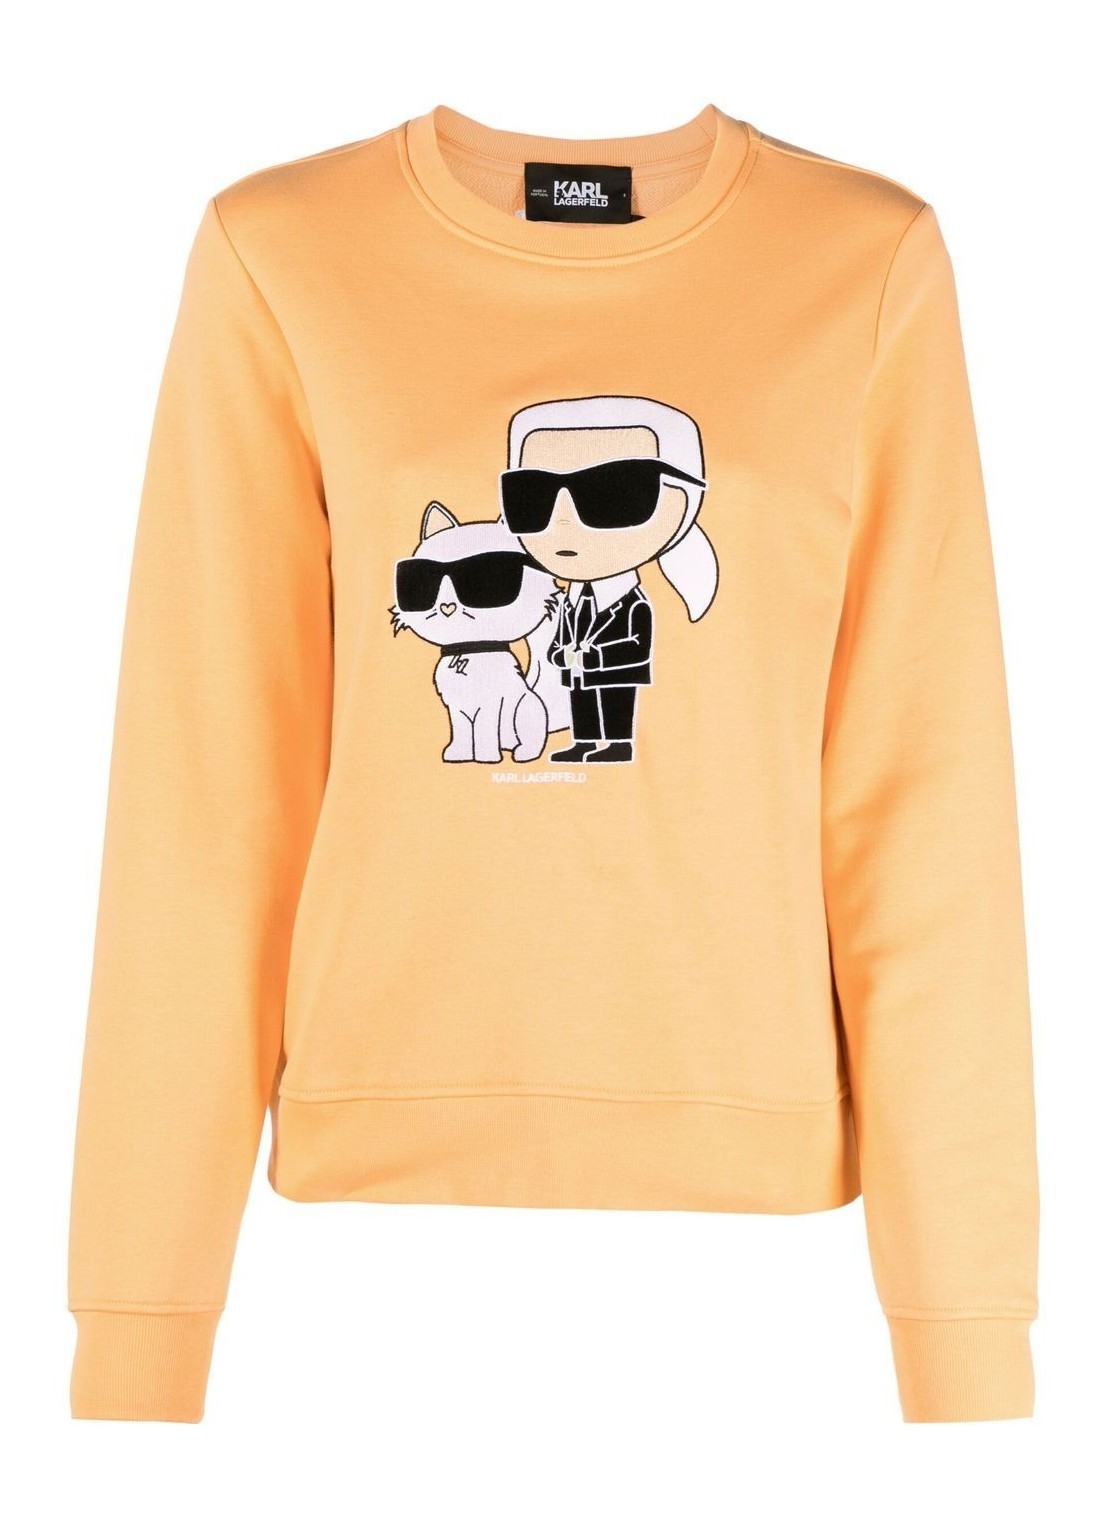 Sudadera karl lagerfeld sweater woman ikonik 2.0 sweatshirt 230w1803 138 talla naranja
 